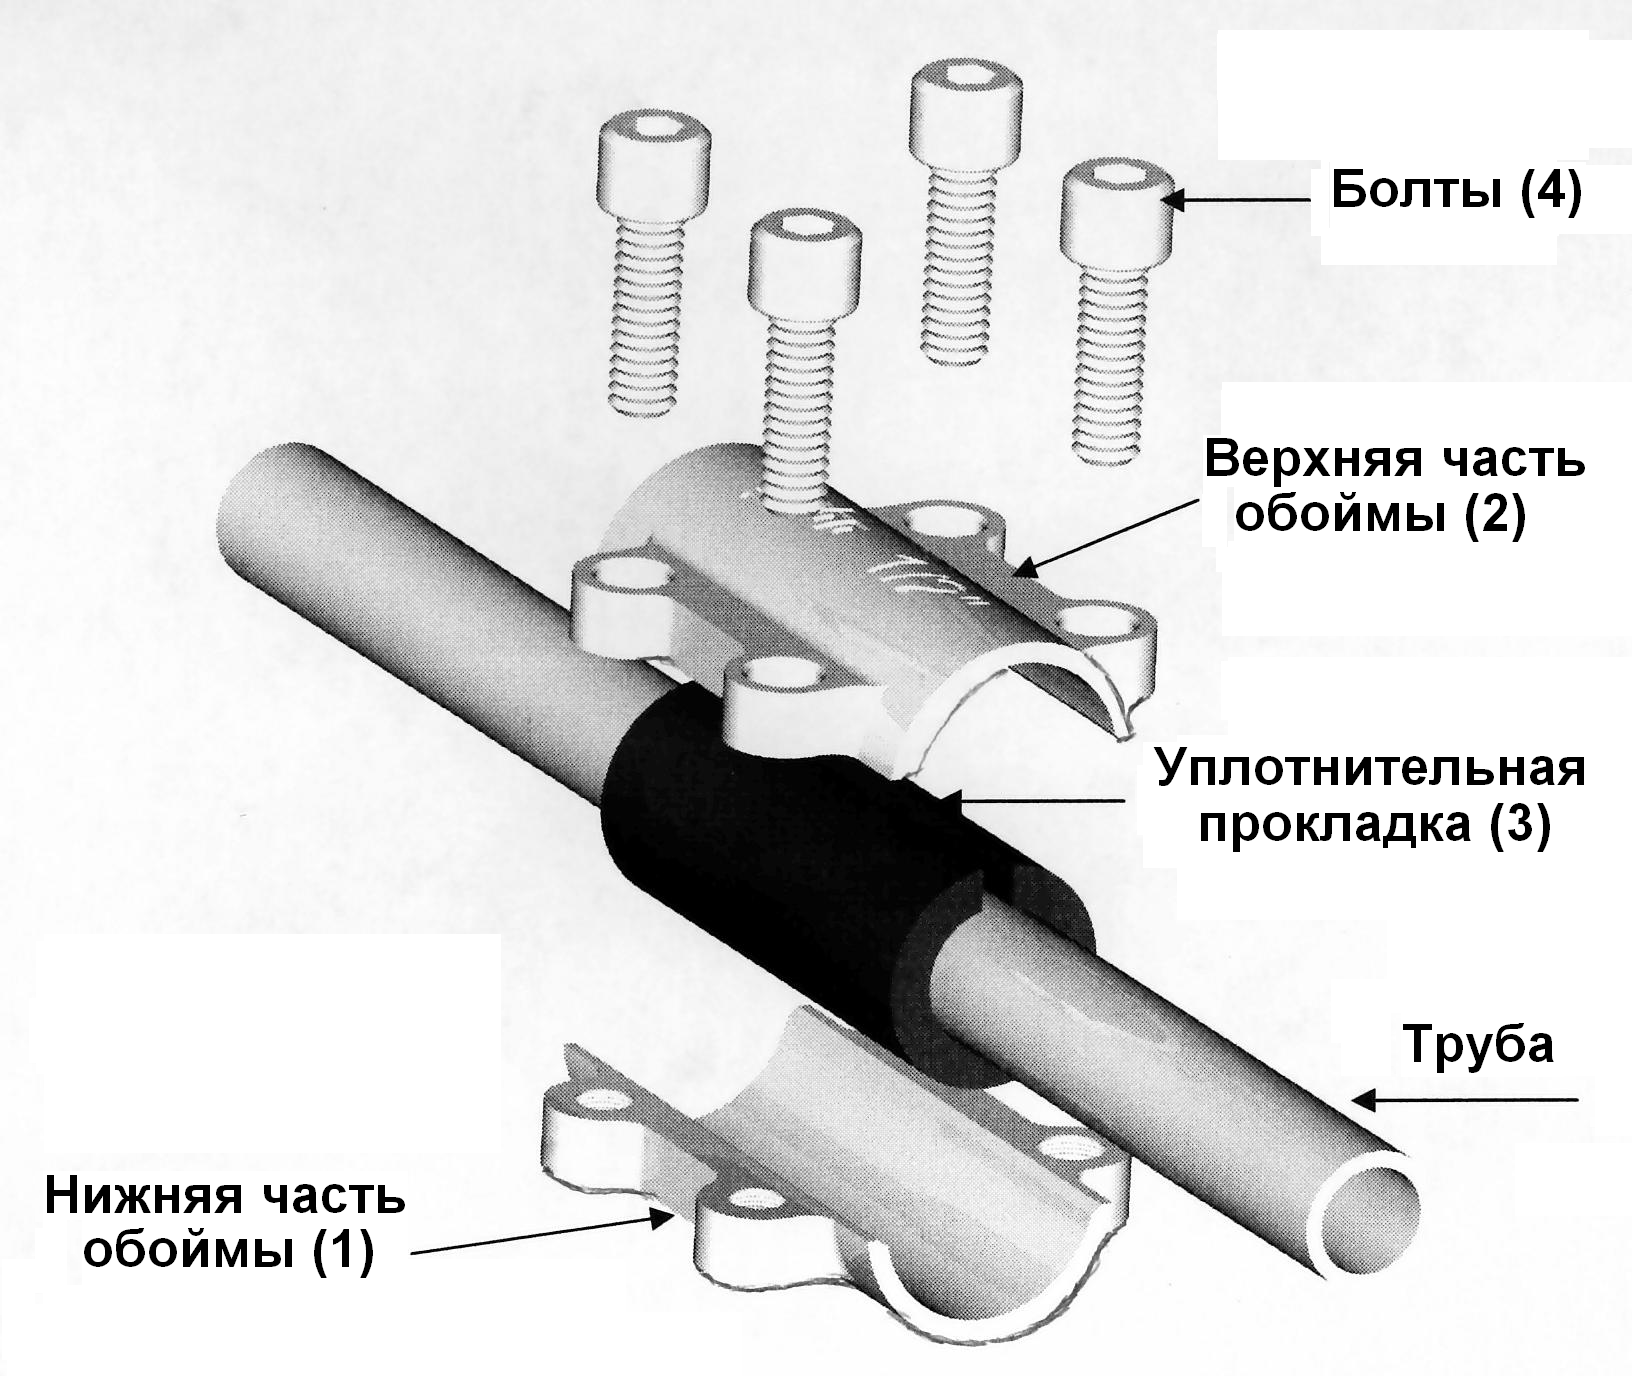 Механические соединения труб. Обойма ремонтная Gebo DSK 1/2". Соединение металлических труб без сварки и резьбы. Ремонтная муфта для полипропиленовых труб 1/2. Схема соединения стальных труб на резьбе.